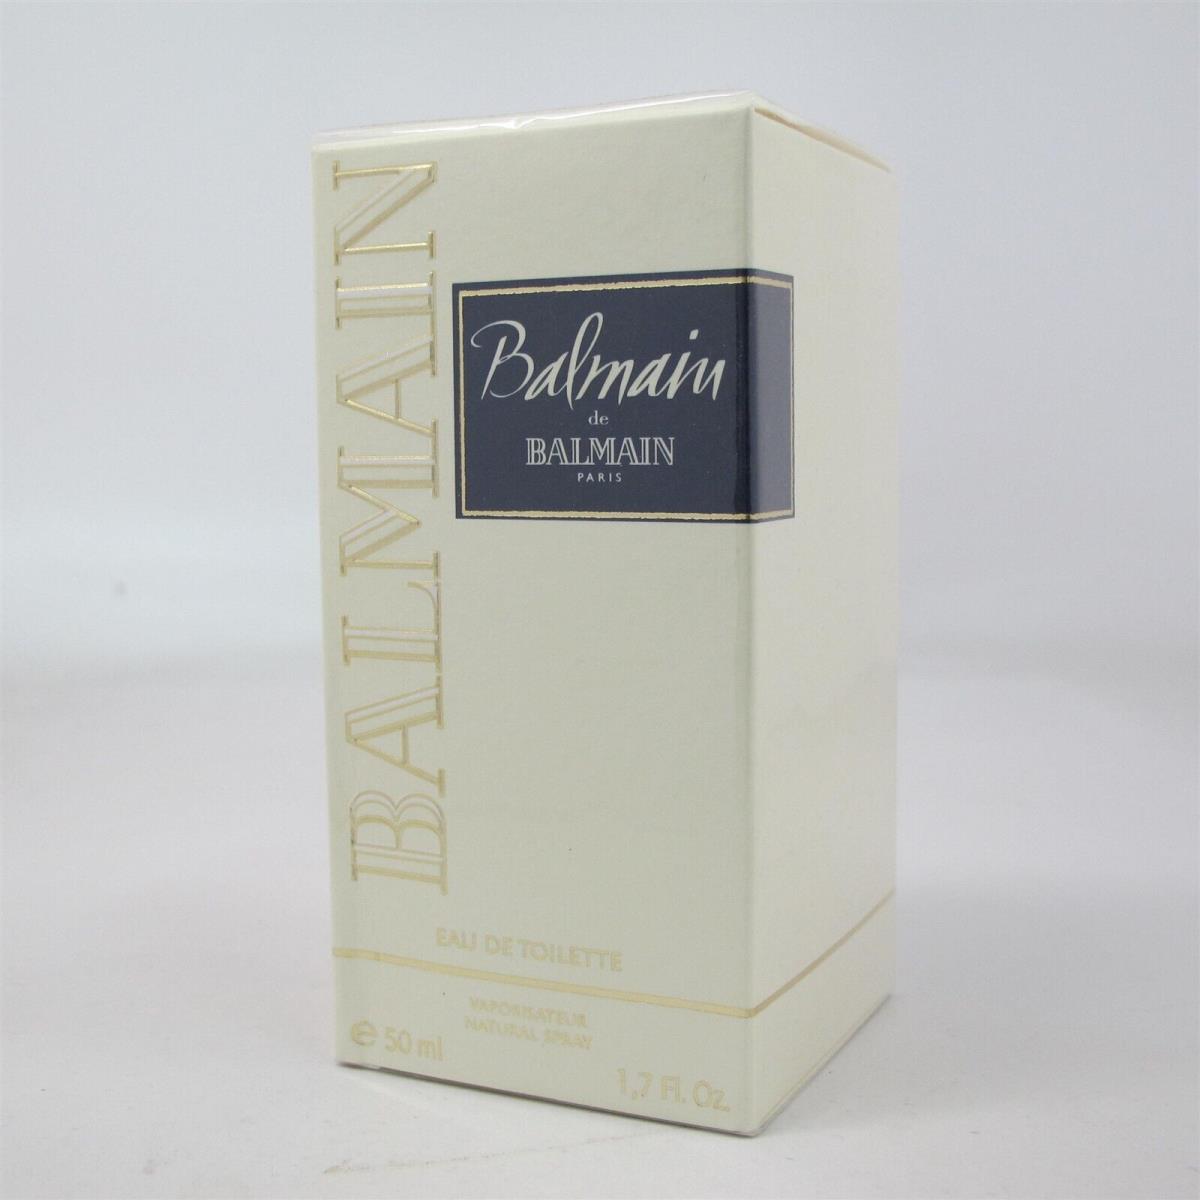 Balmain de Balmain 50 Ml/ 1.7 oz Eau de Toilette Spray Rare